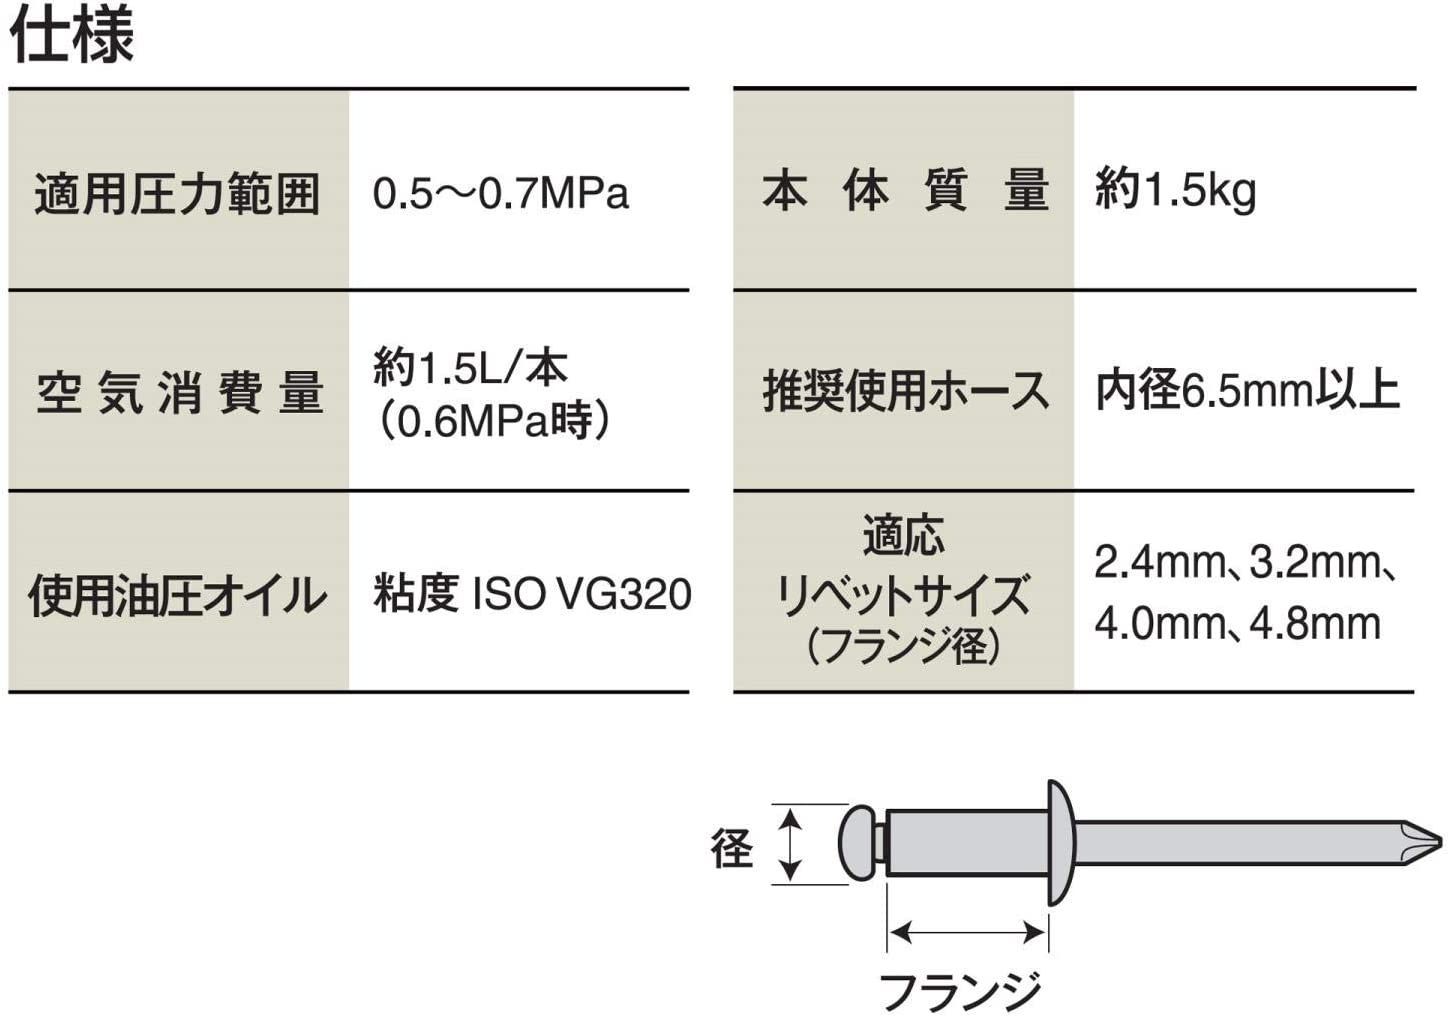 パオック(PAOCK) エアーリベッター ノーズピース(2.4 3.2 4.0 4.8mm) ARS-2448PA - 5